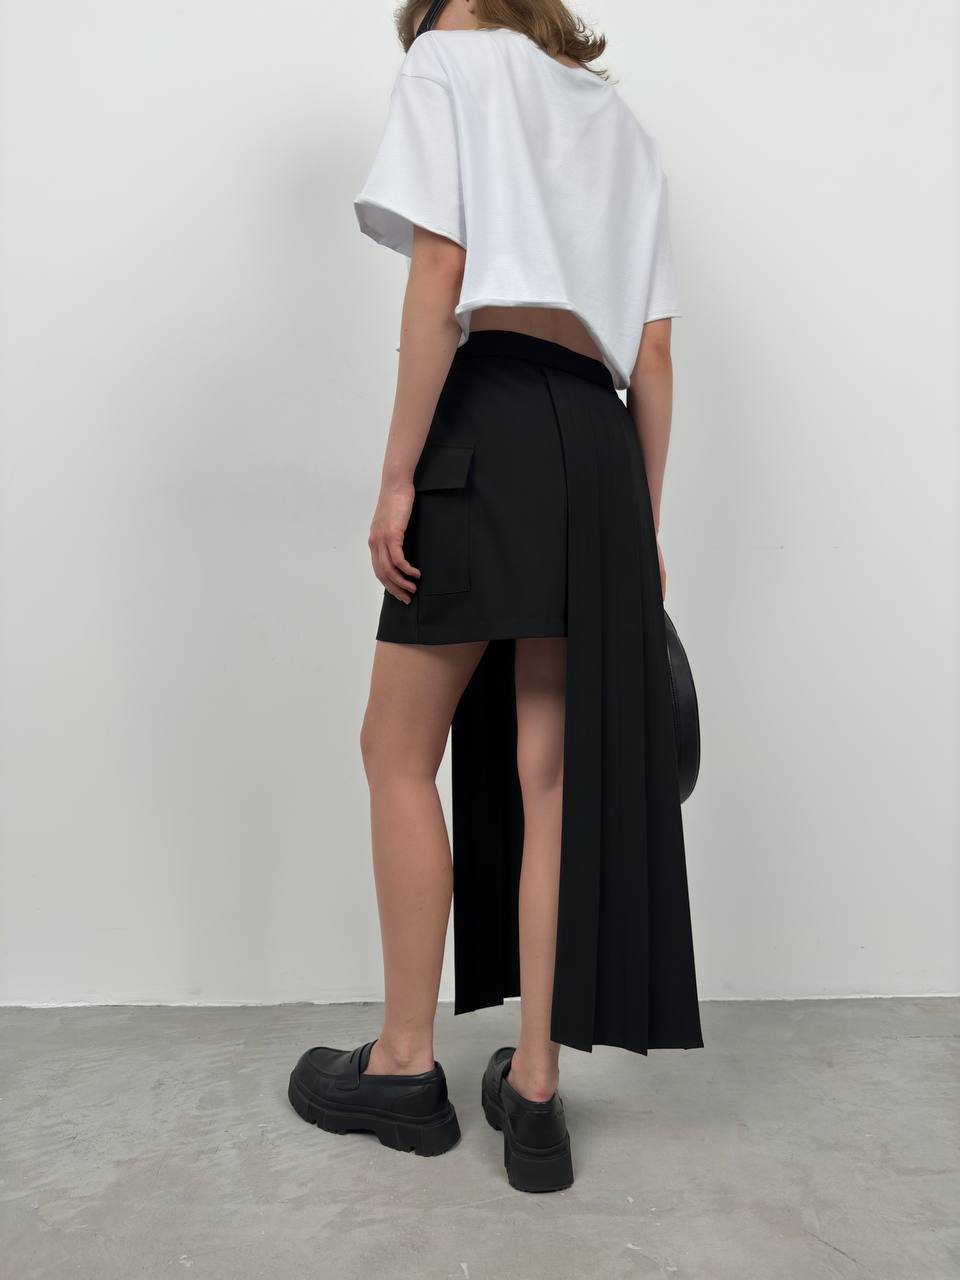 BK1774 - Skirt